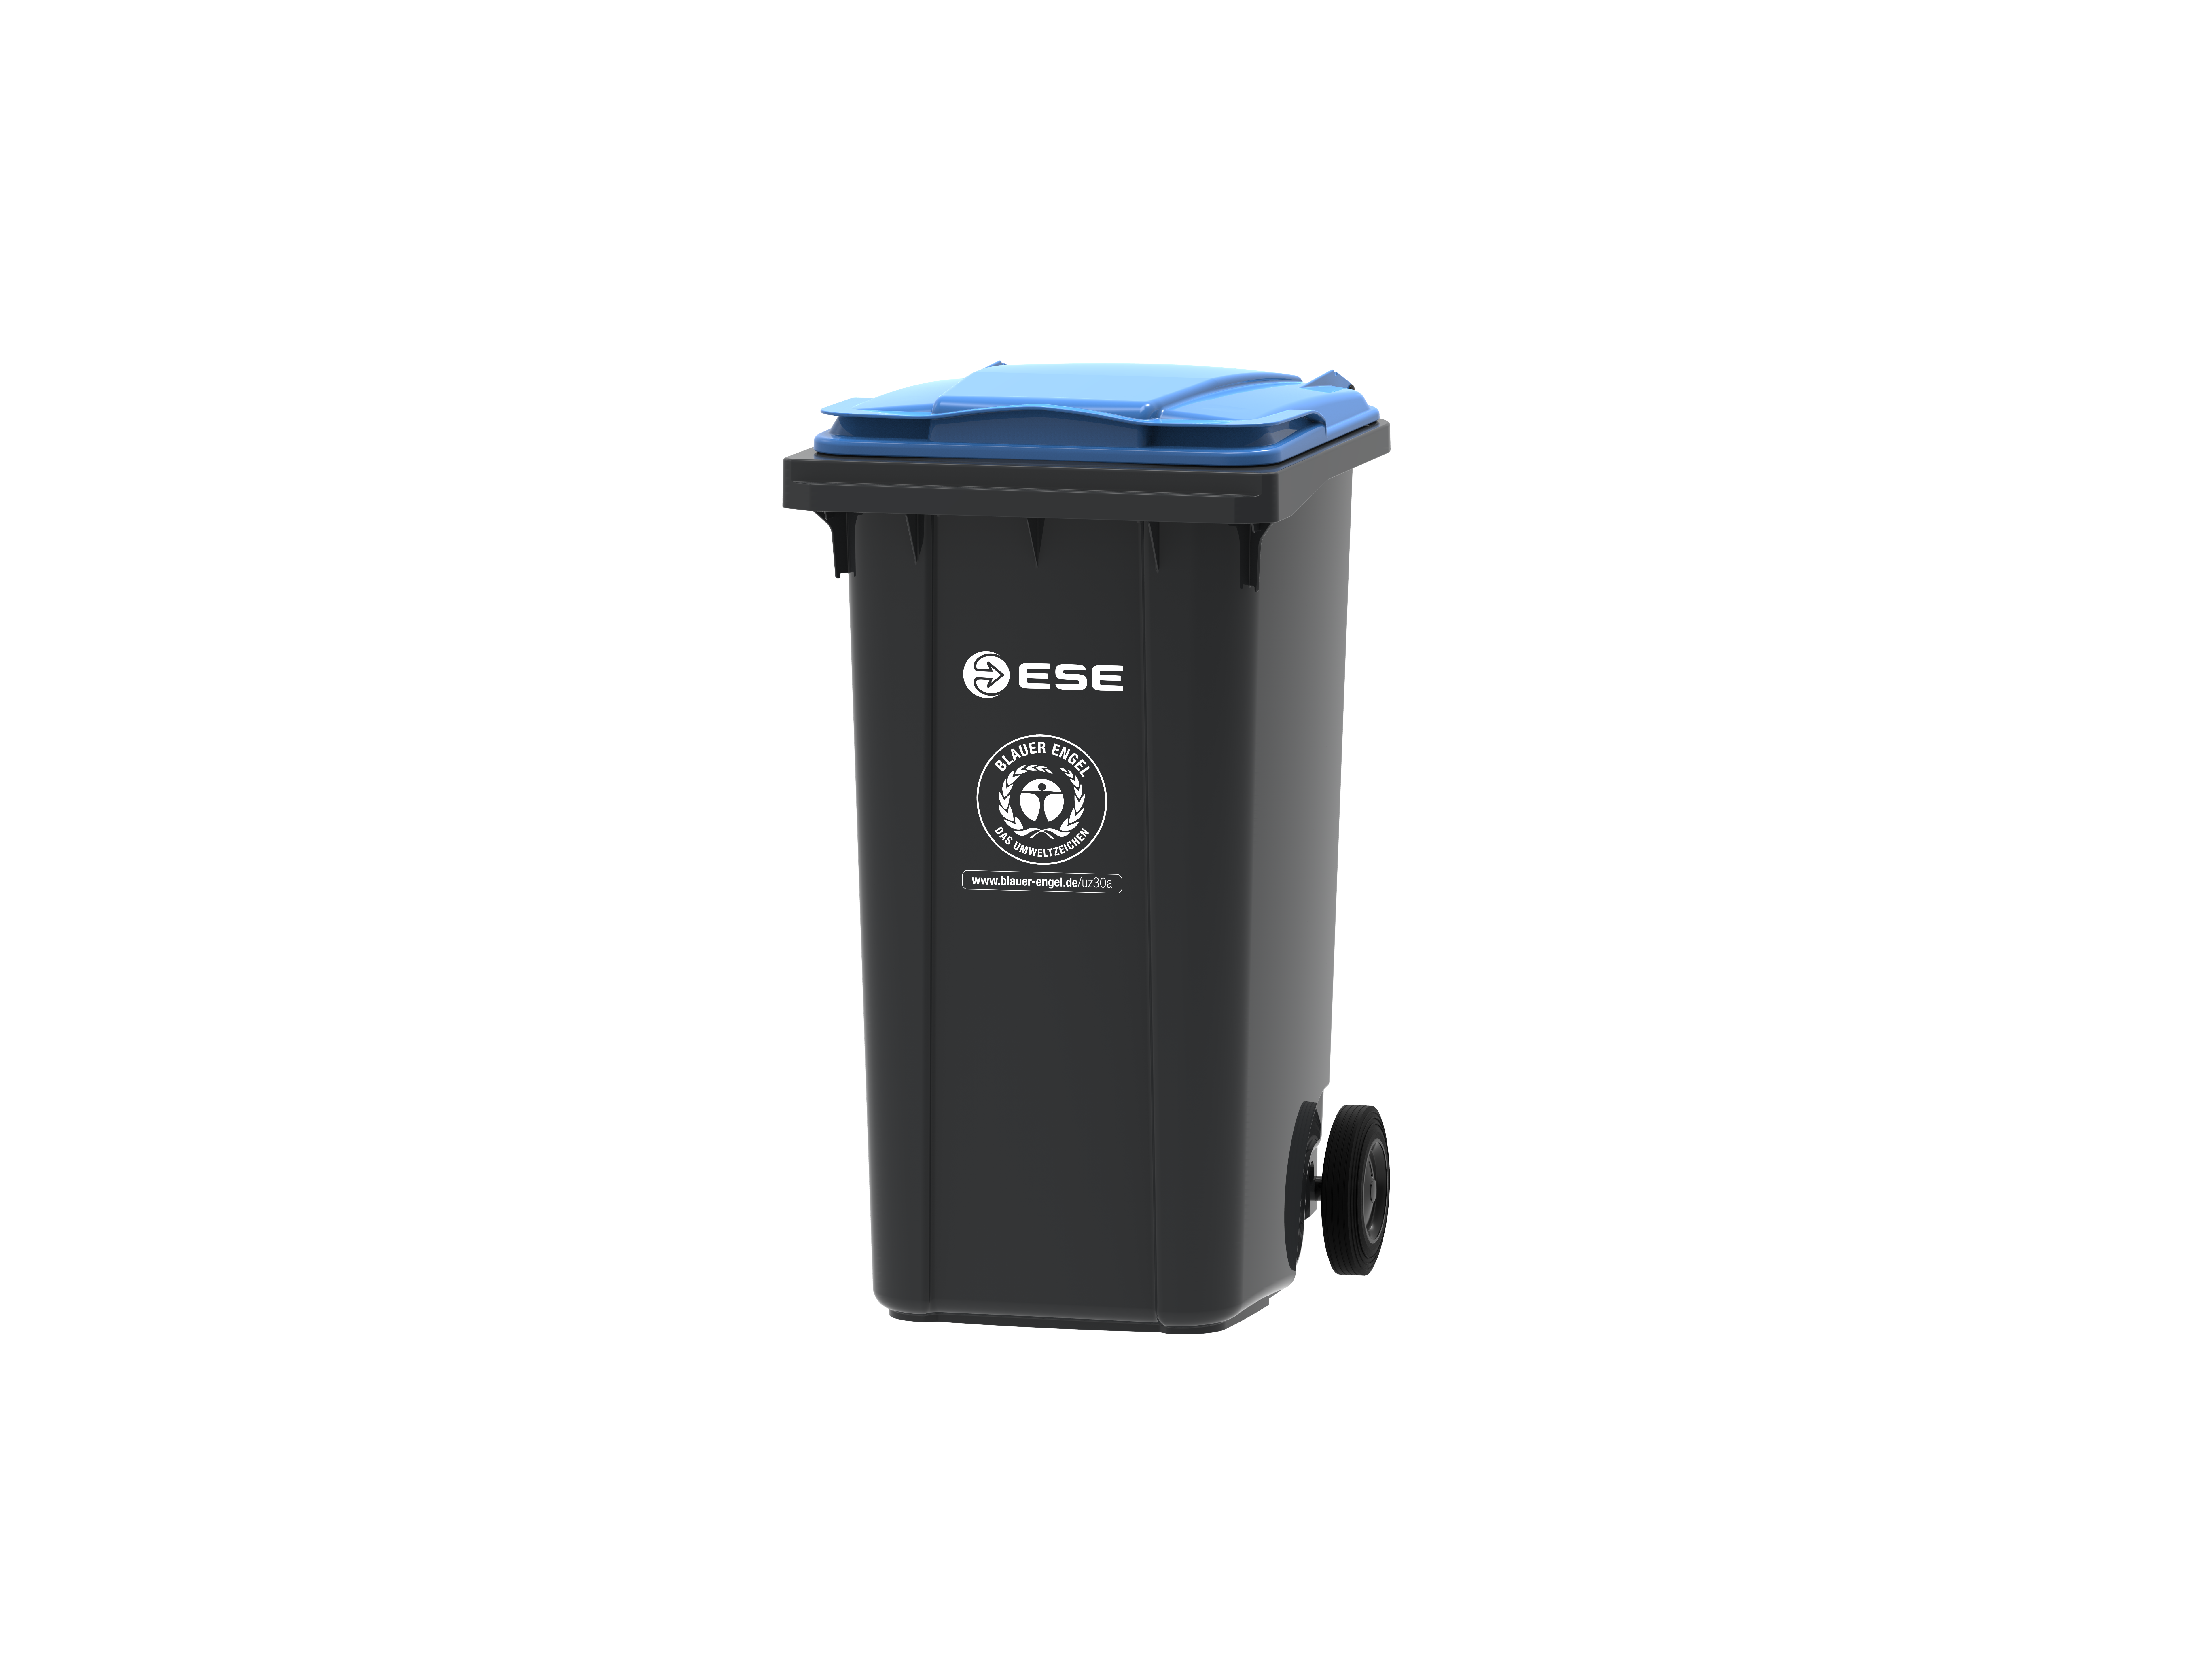 Wertstoffbehälter aus Recyclingkunststoff der ESE GmbH mit dem Umweltzeichen Blauer Engel